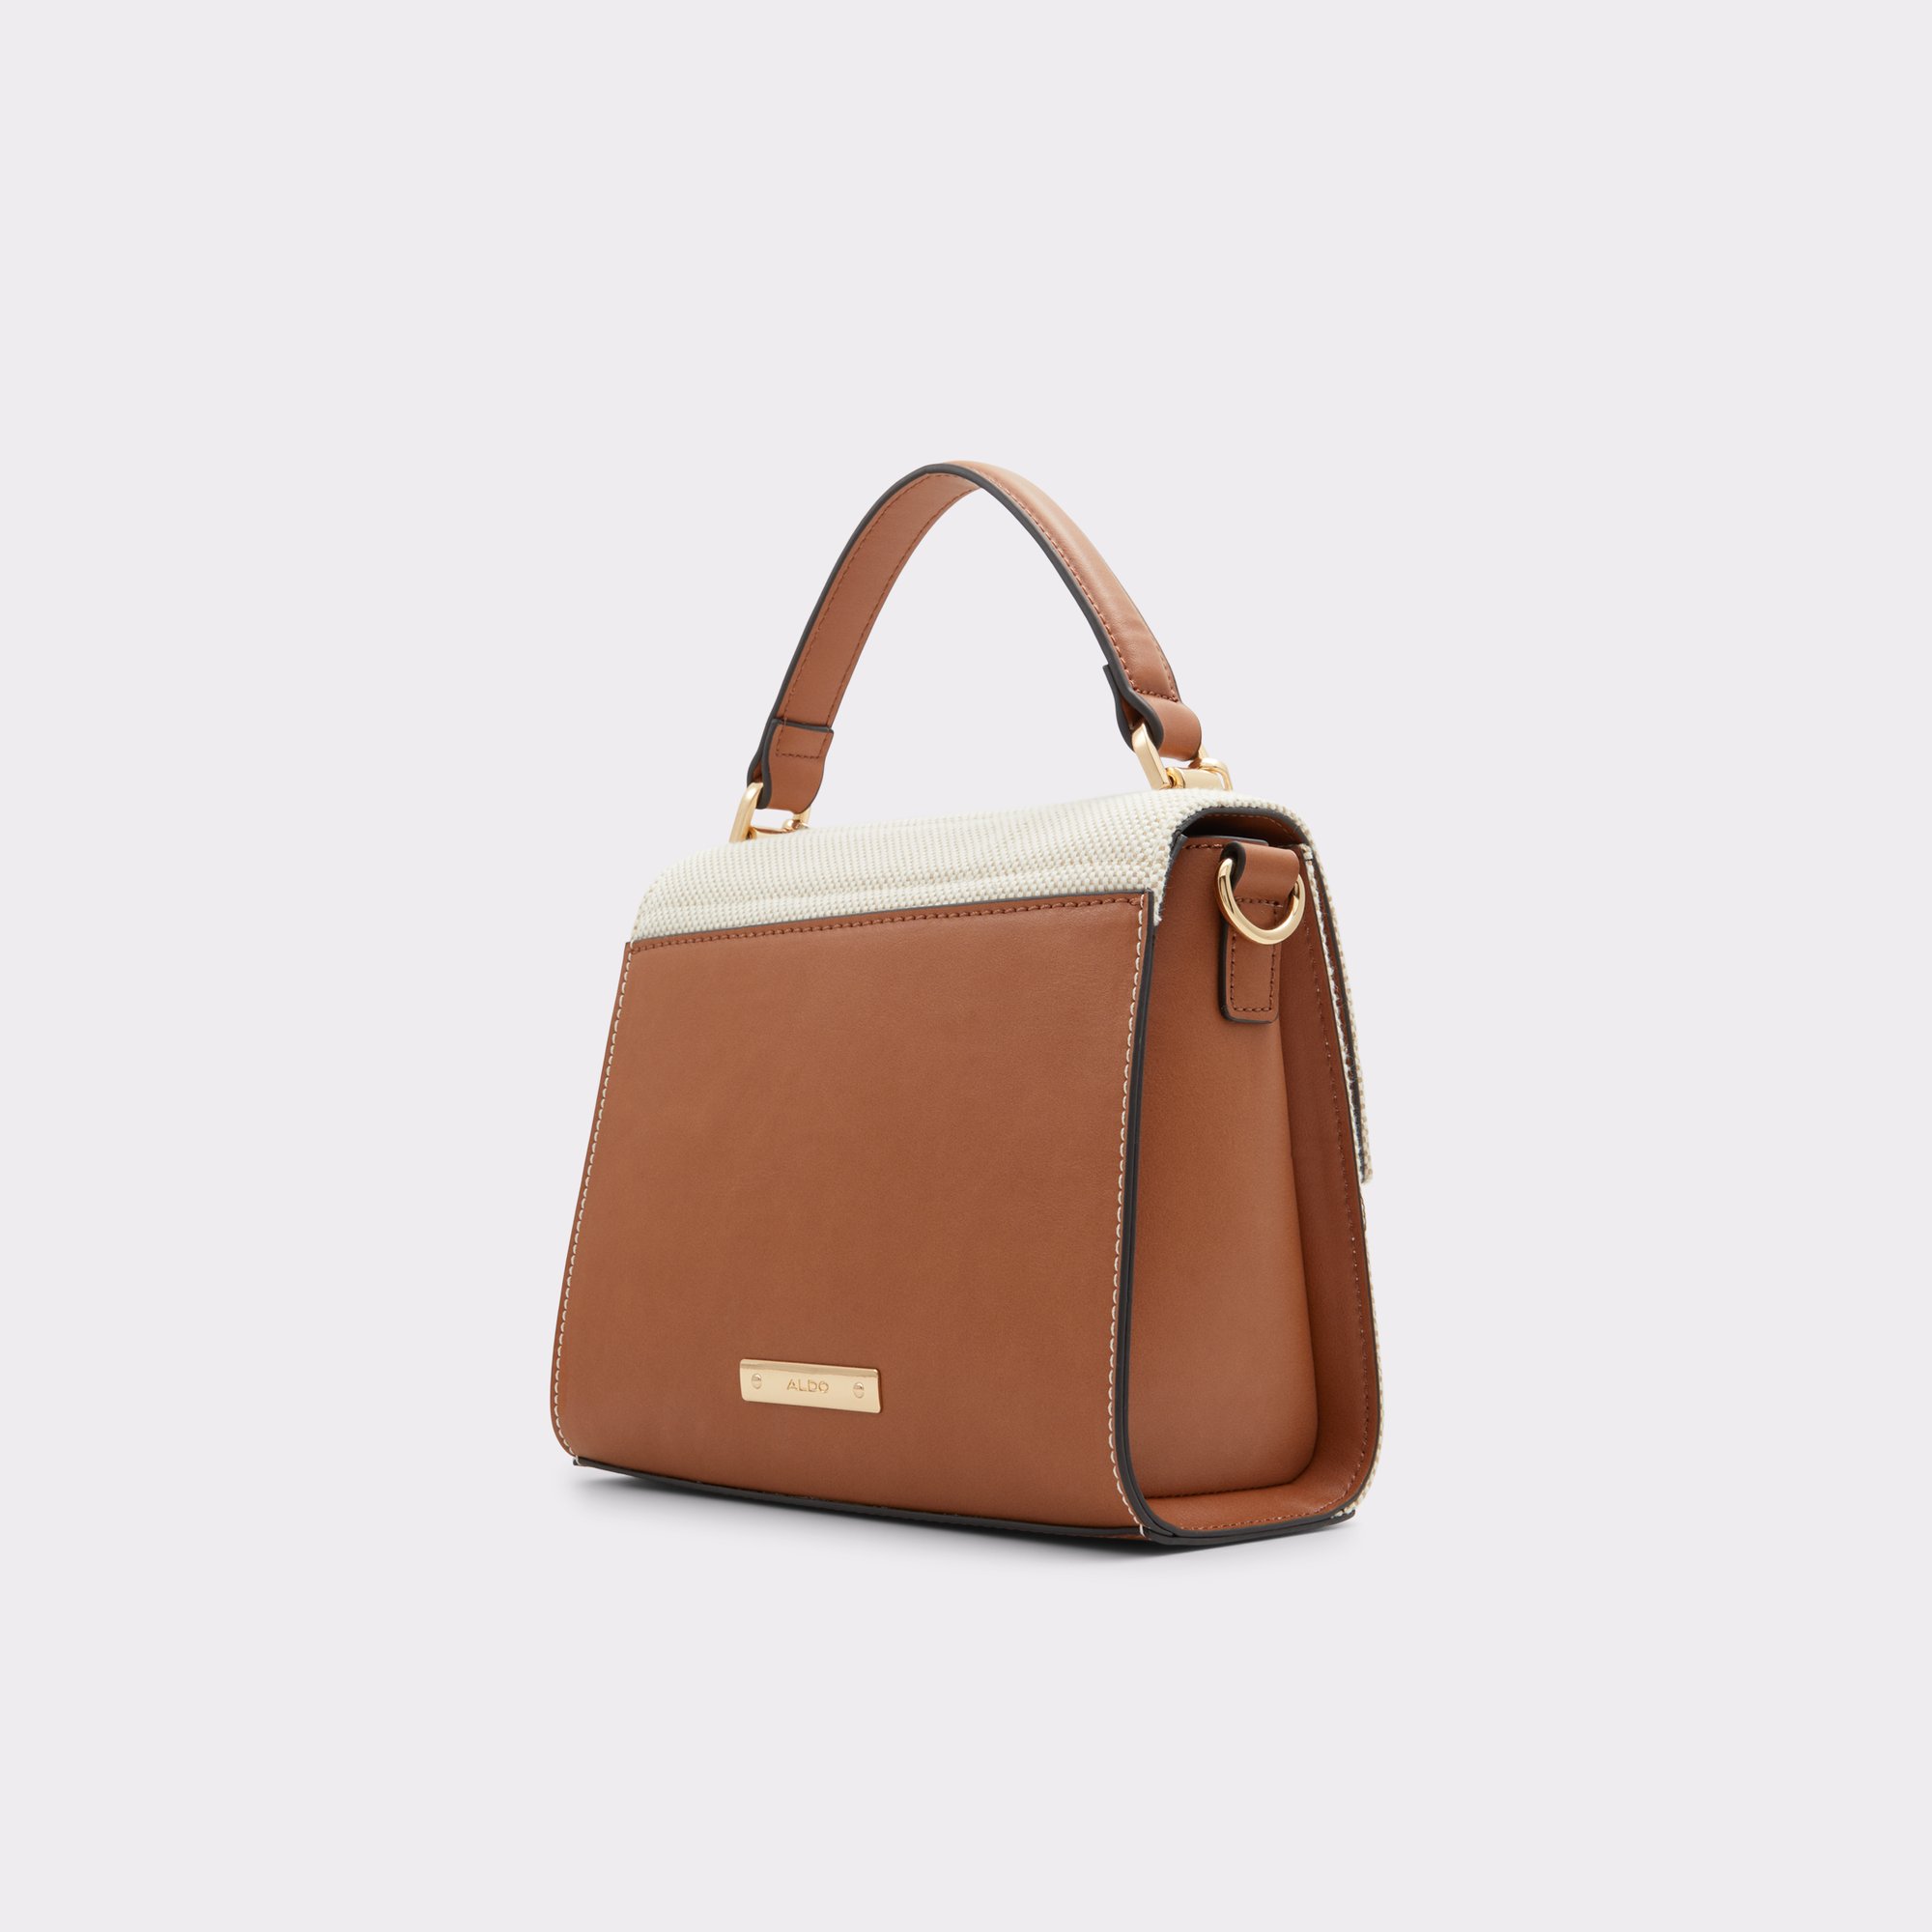 Aldo Brown & White Color Block Medium Handbags with Tag